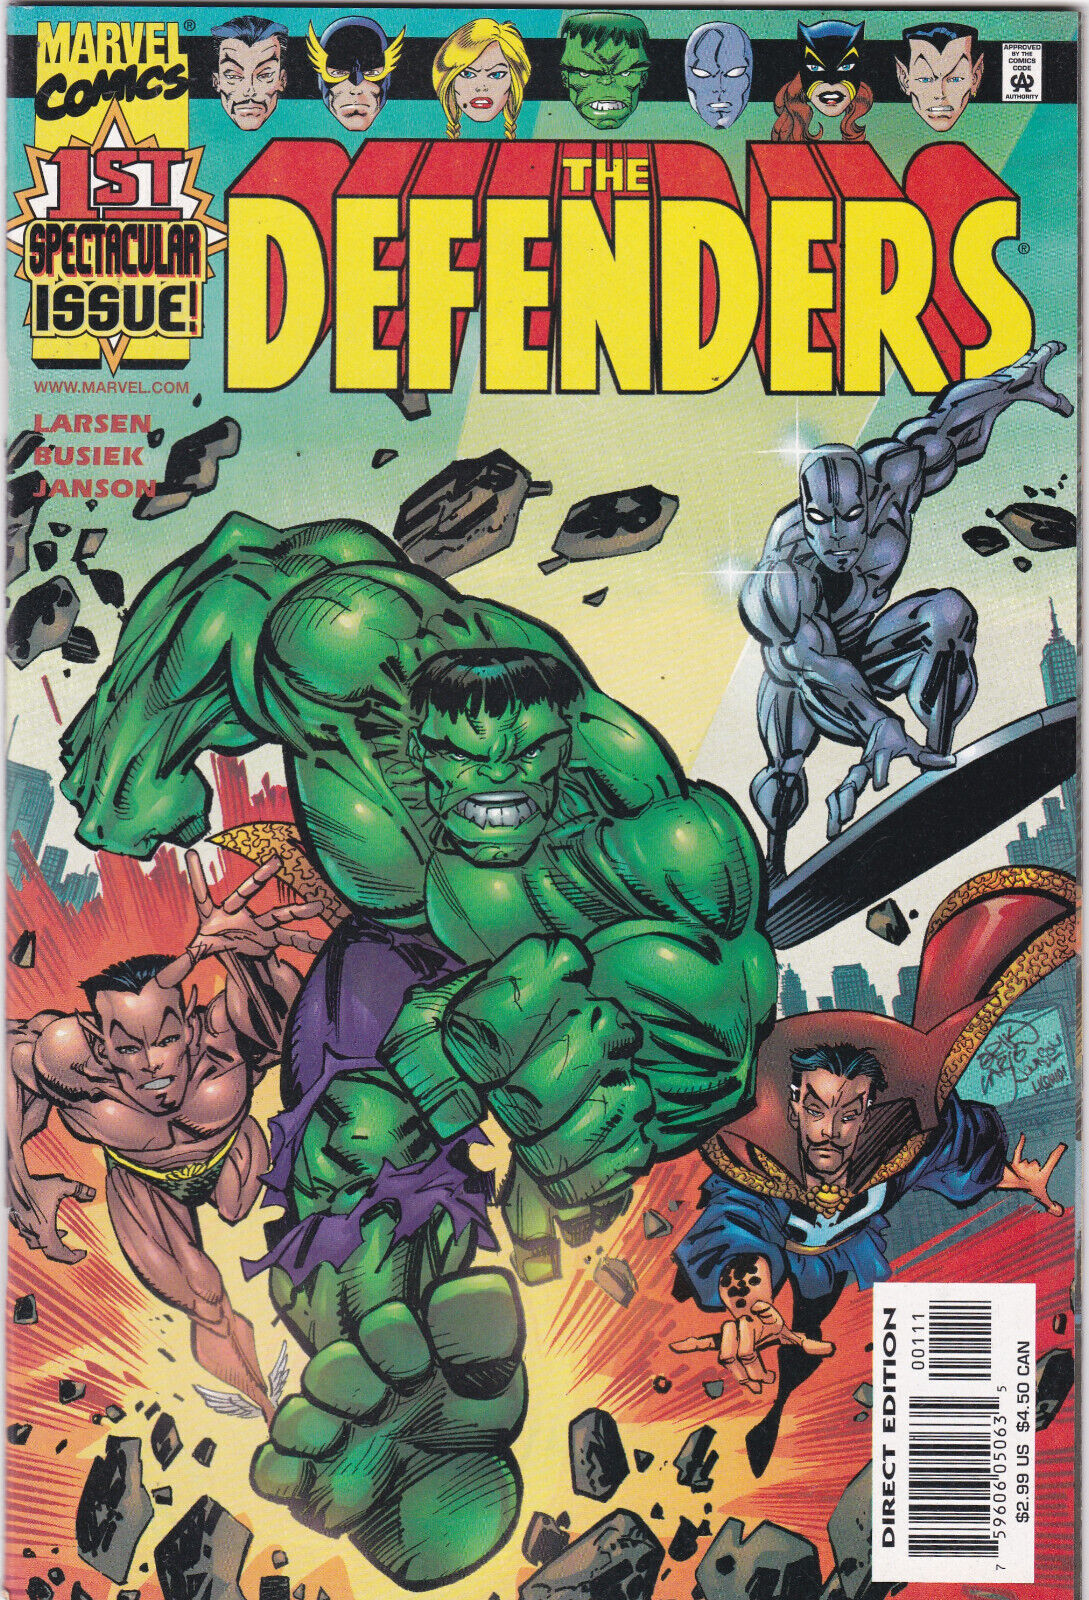 The Defenders #1, Vol. 2 (2001-2002) Marvel Comics,High Grade